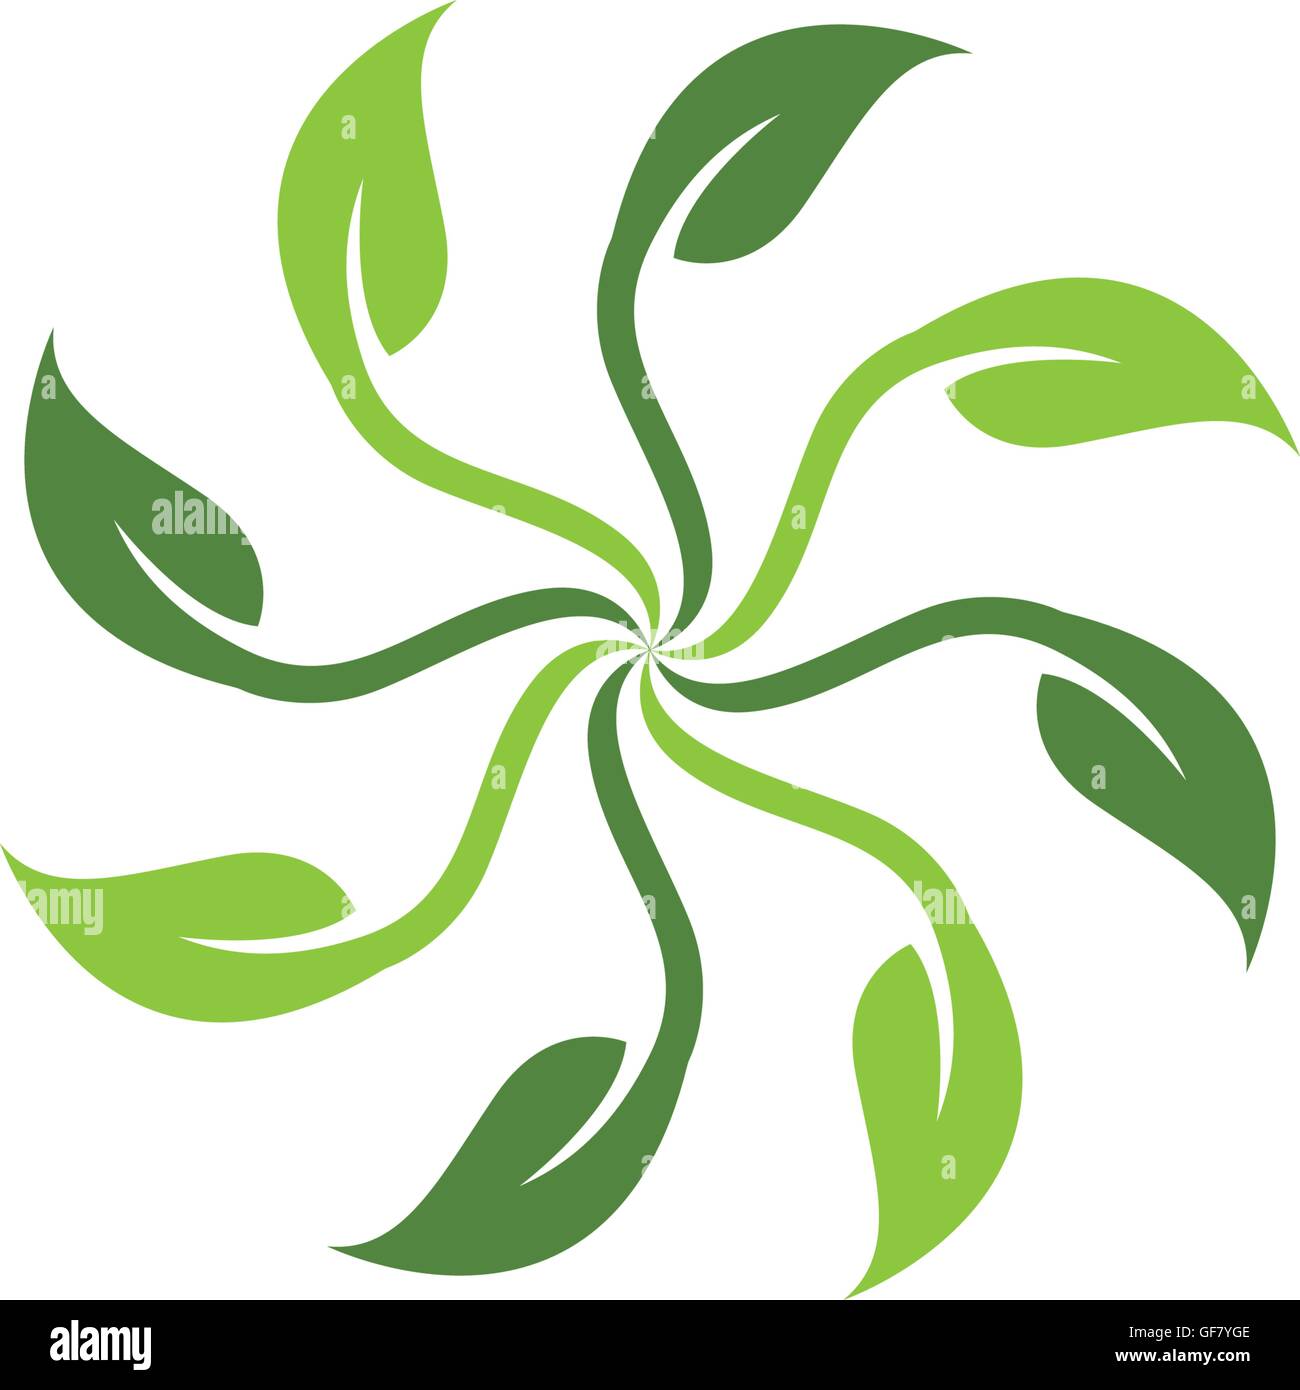 Family Tree Logo Stock Vector Image & Art - Alamy